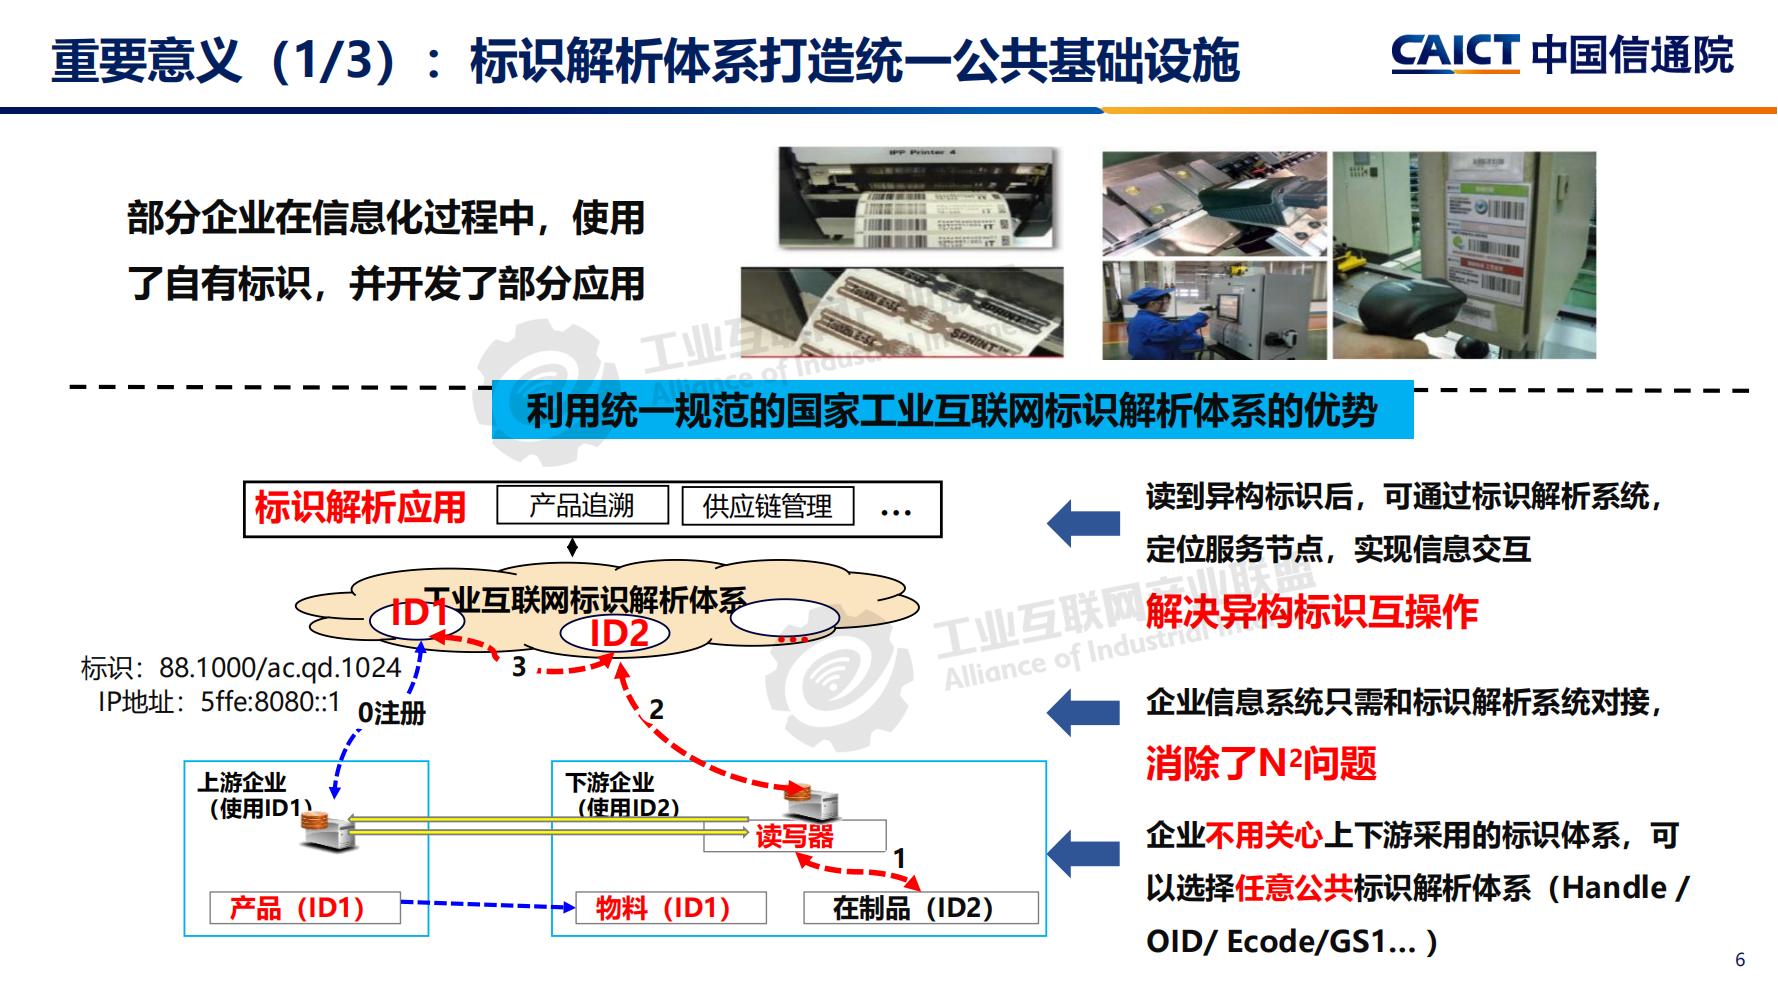 4-工业互联网标识解析体系建设进展（深圳）12-16(1)-水印_05.jpg